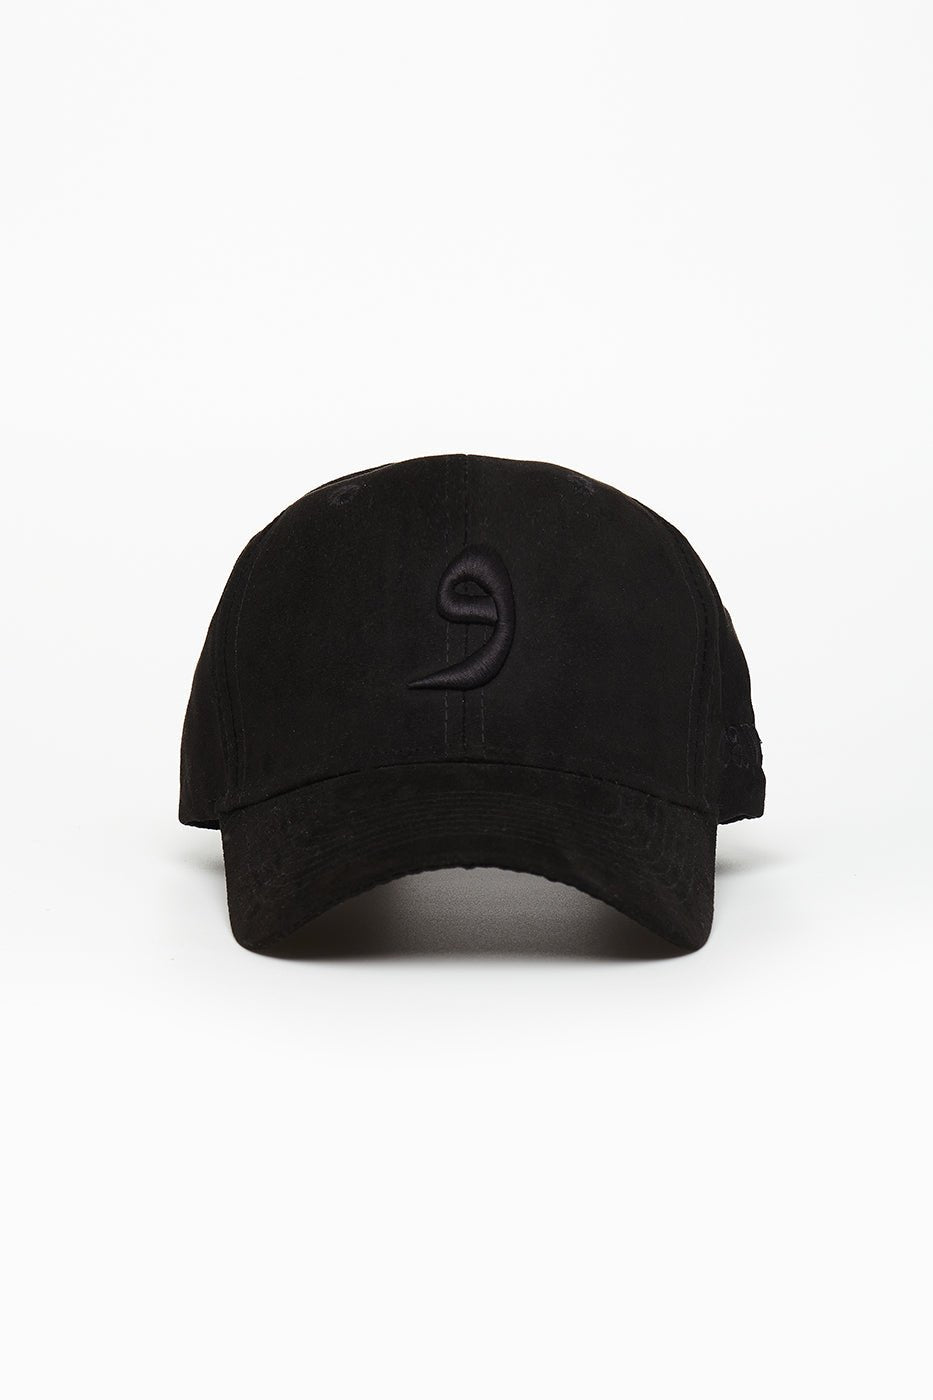 Black Suede Arabic Cap - CAVE